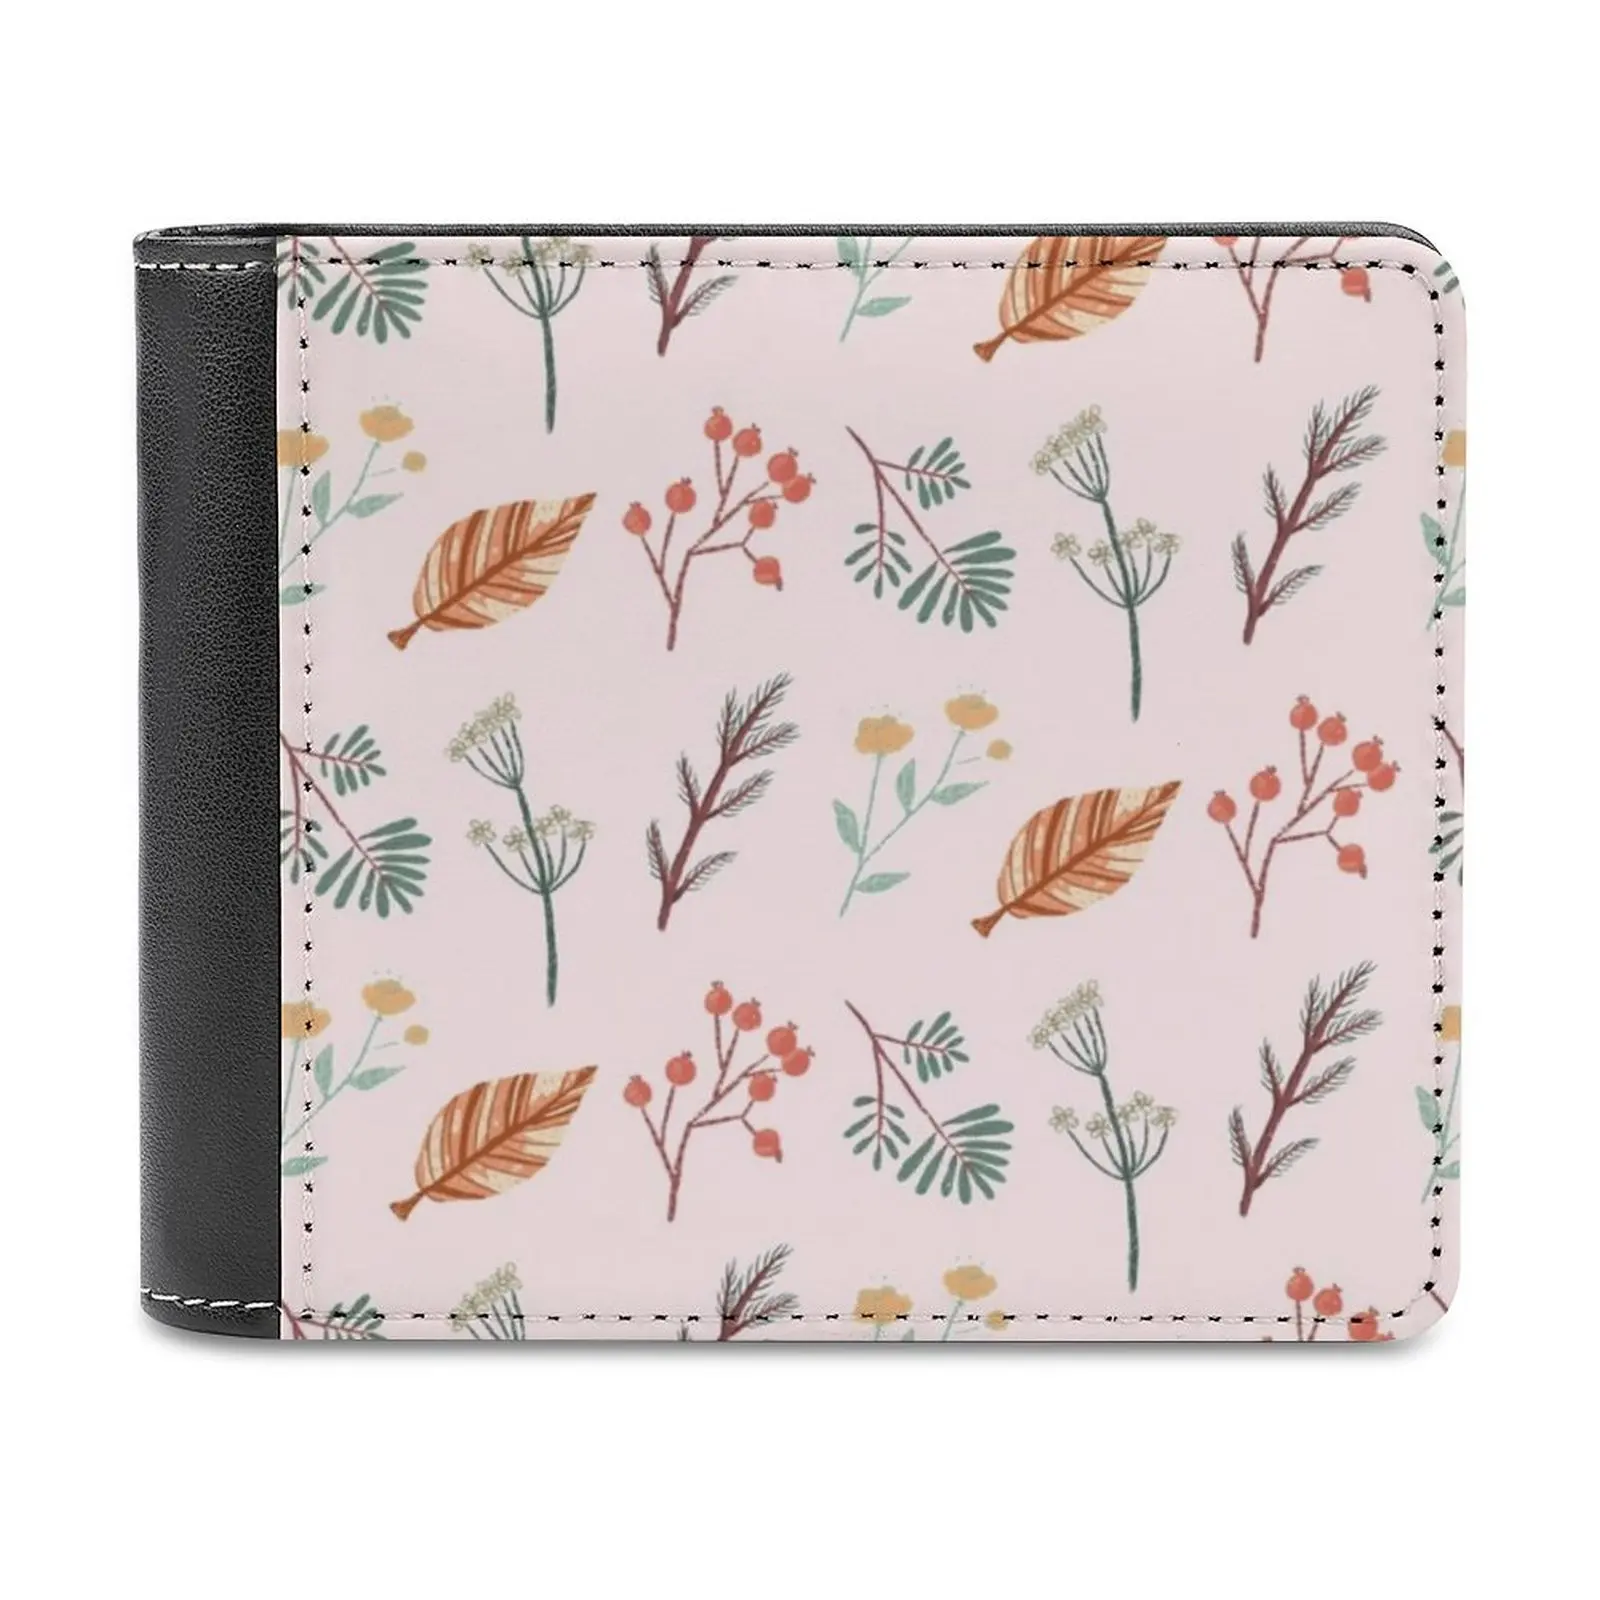 

Мужской классический кожаный кошелек Forest Friends, черный бумажник с отделением для кредитных карт, модный мужской кошелек с растениями, натуральными листьями, для дома